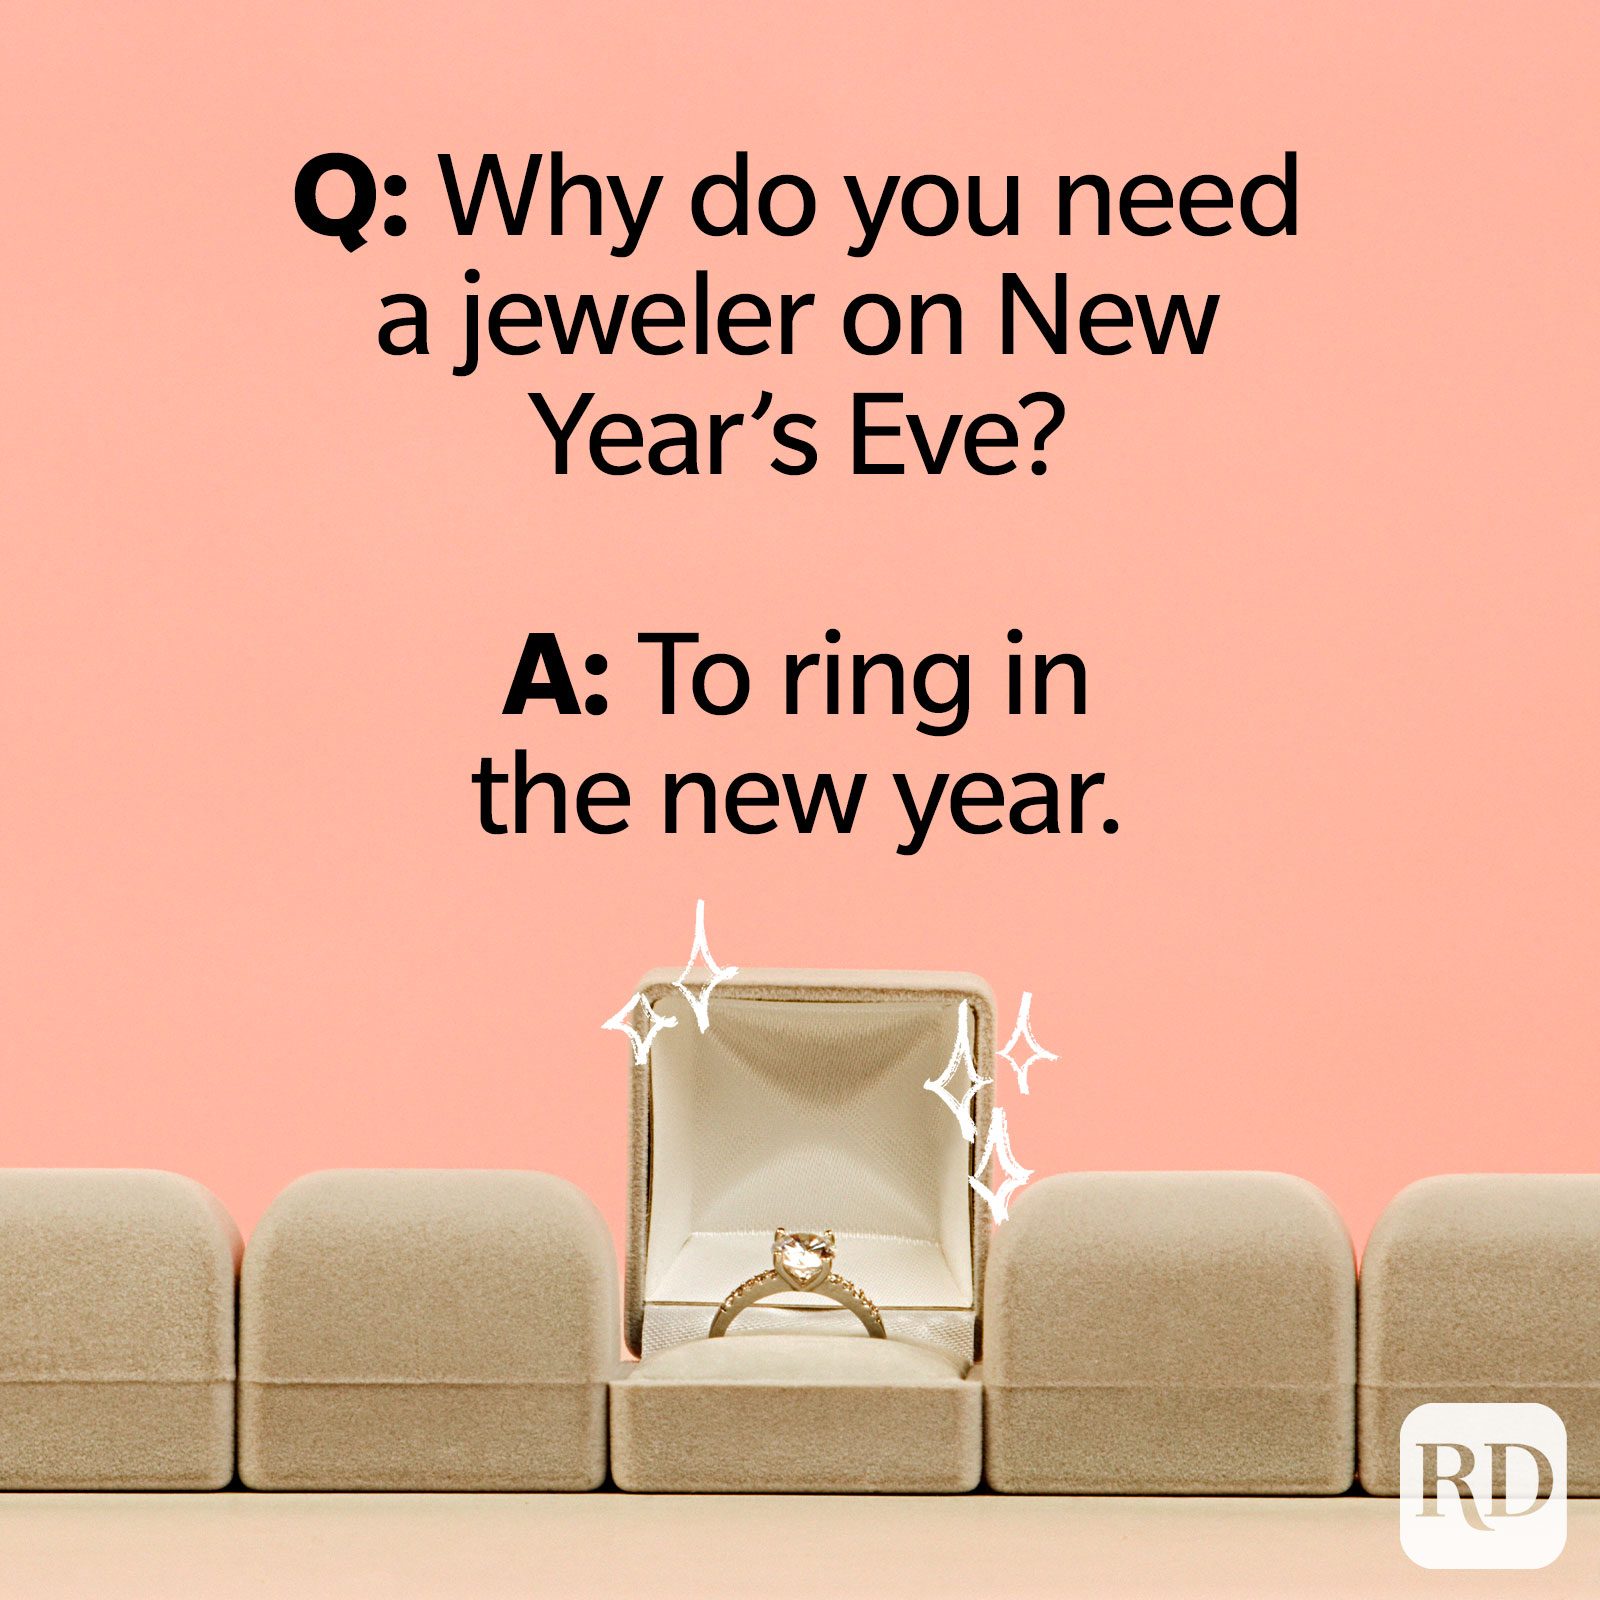 Por qué necesitas un joyero en Nochevieja? R: Para dar la bienvenida al nuevo año.